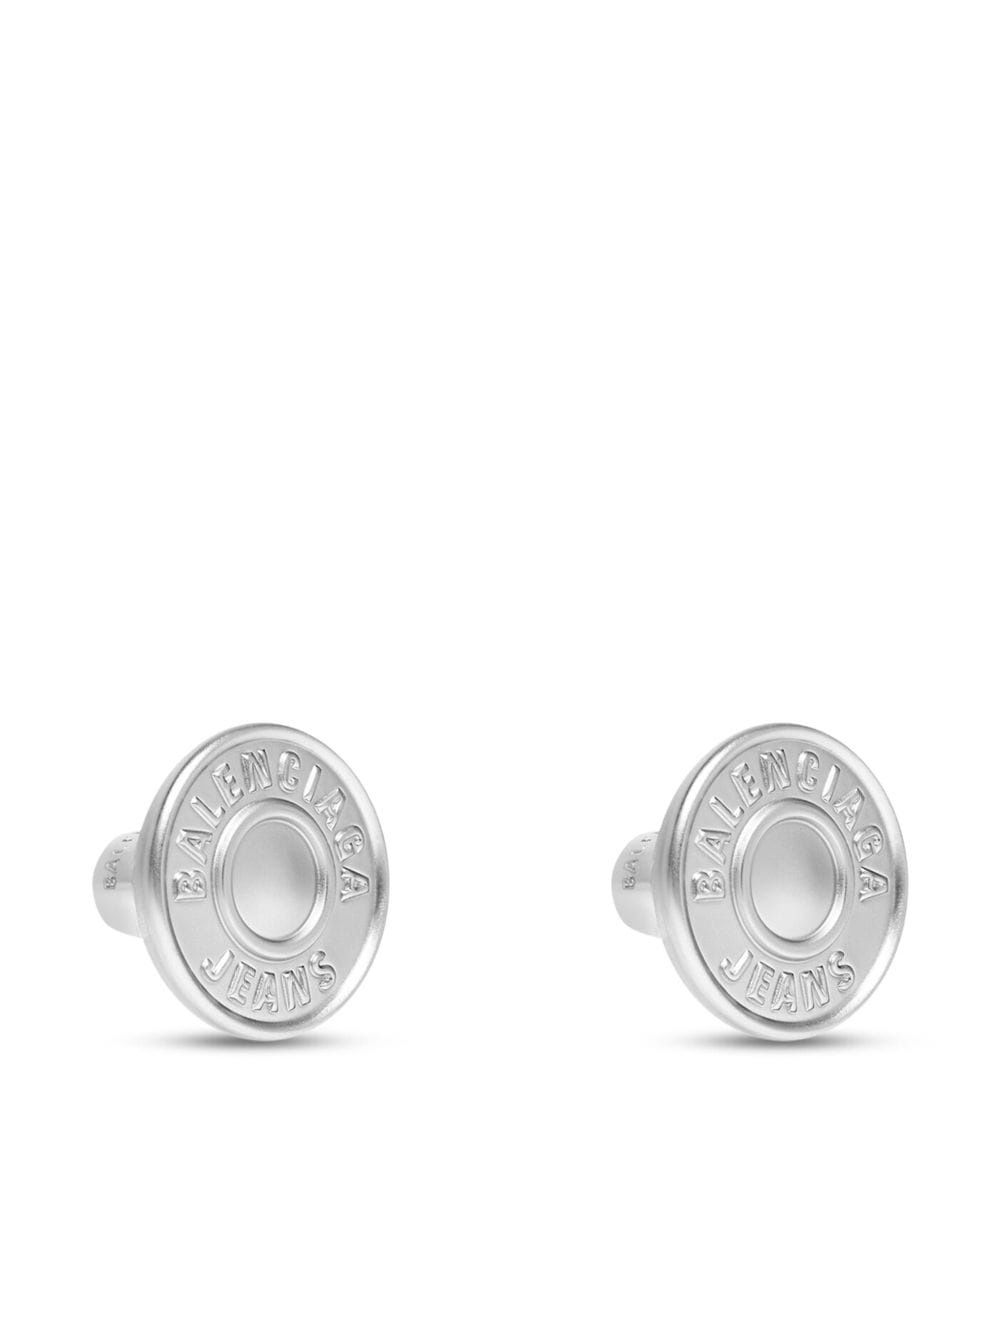 engraved-logo earrings - 3